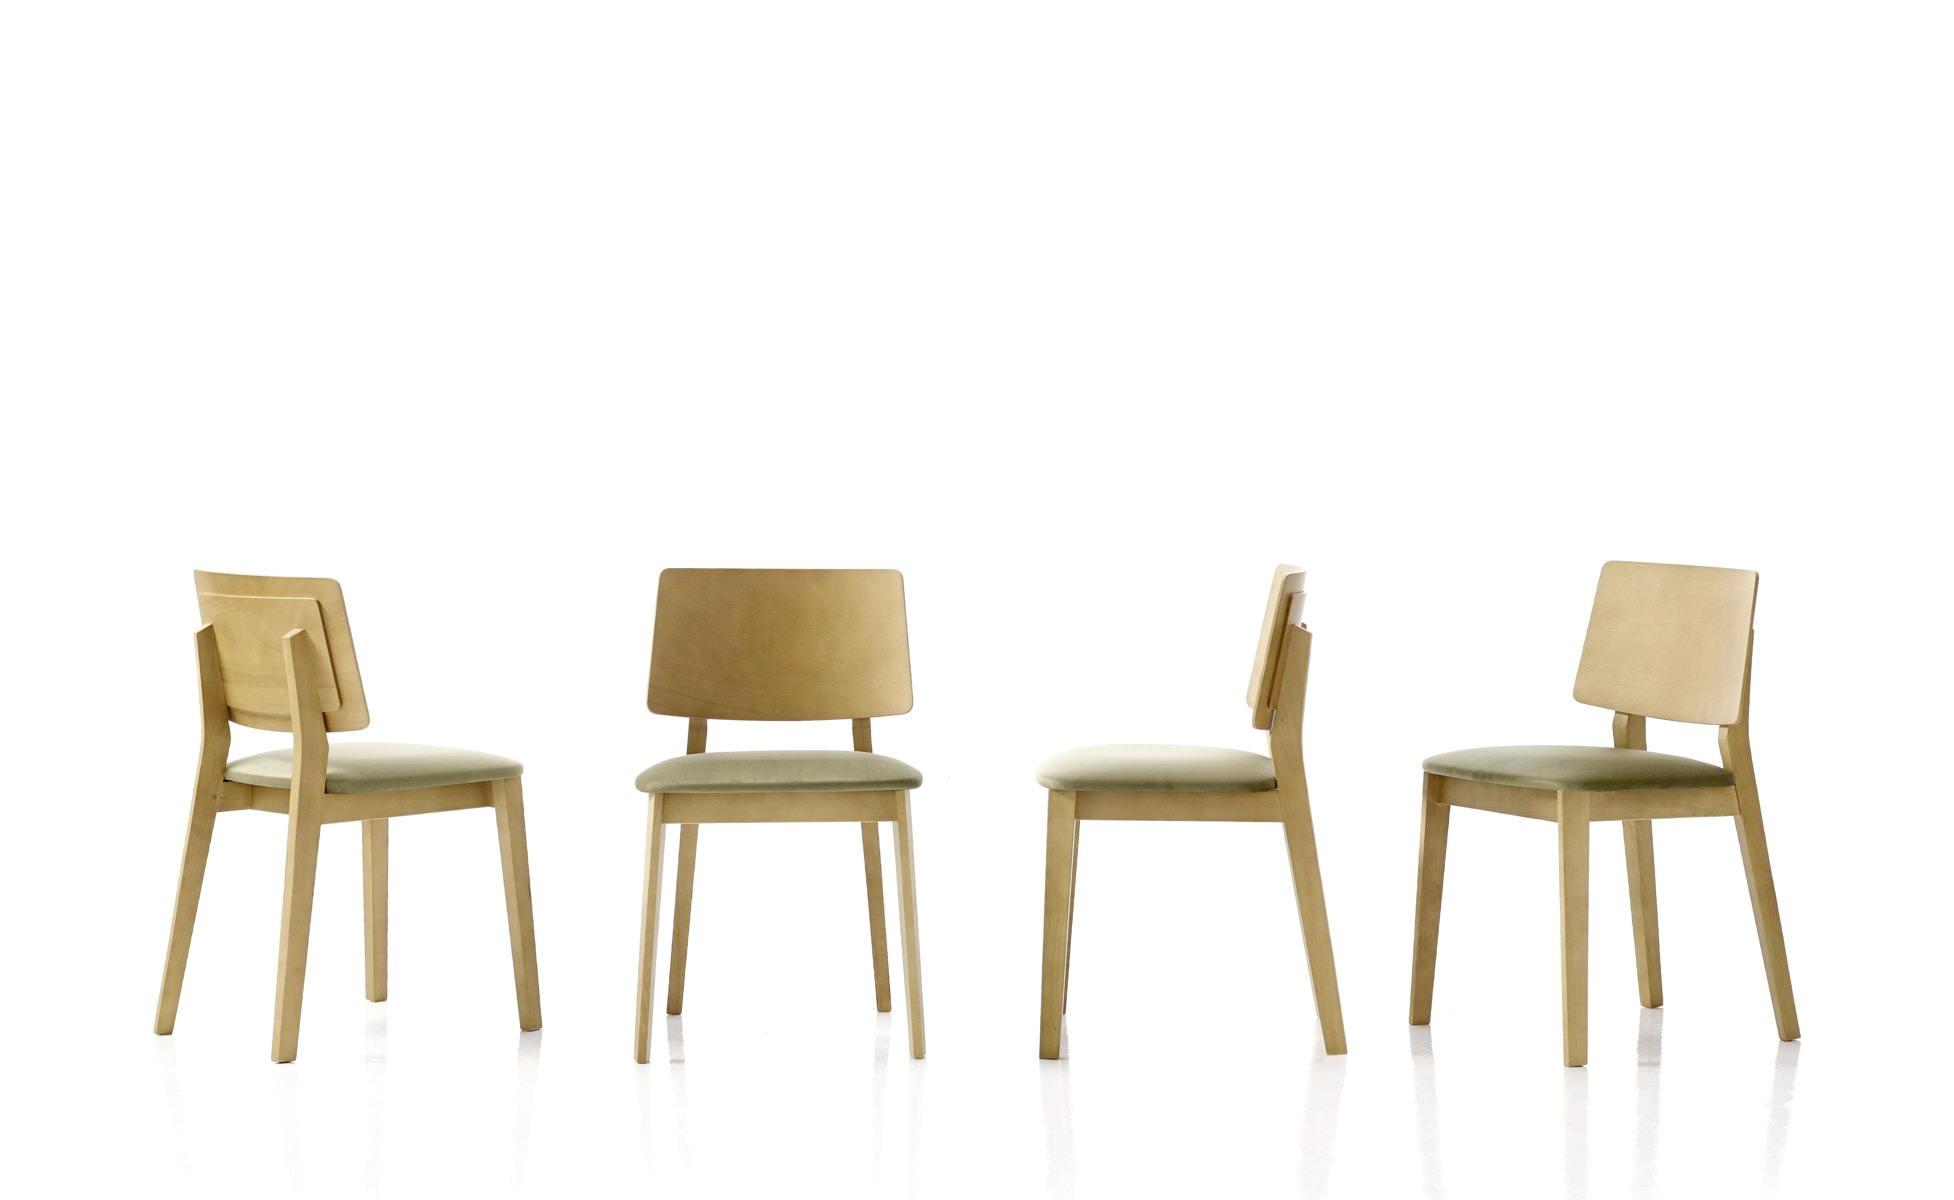 Sillas De Aluminio Para Terraza Segunda Mano: Consejos para comprar las sillas Online